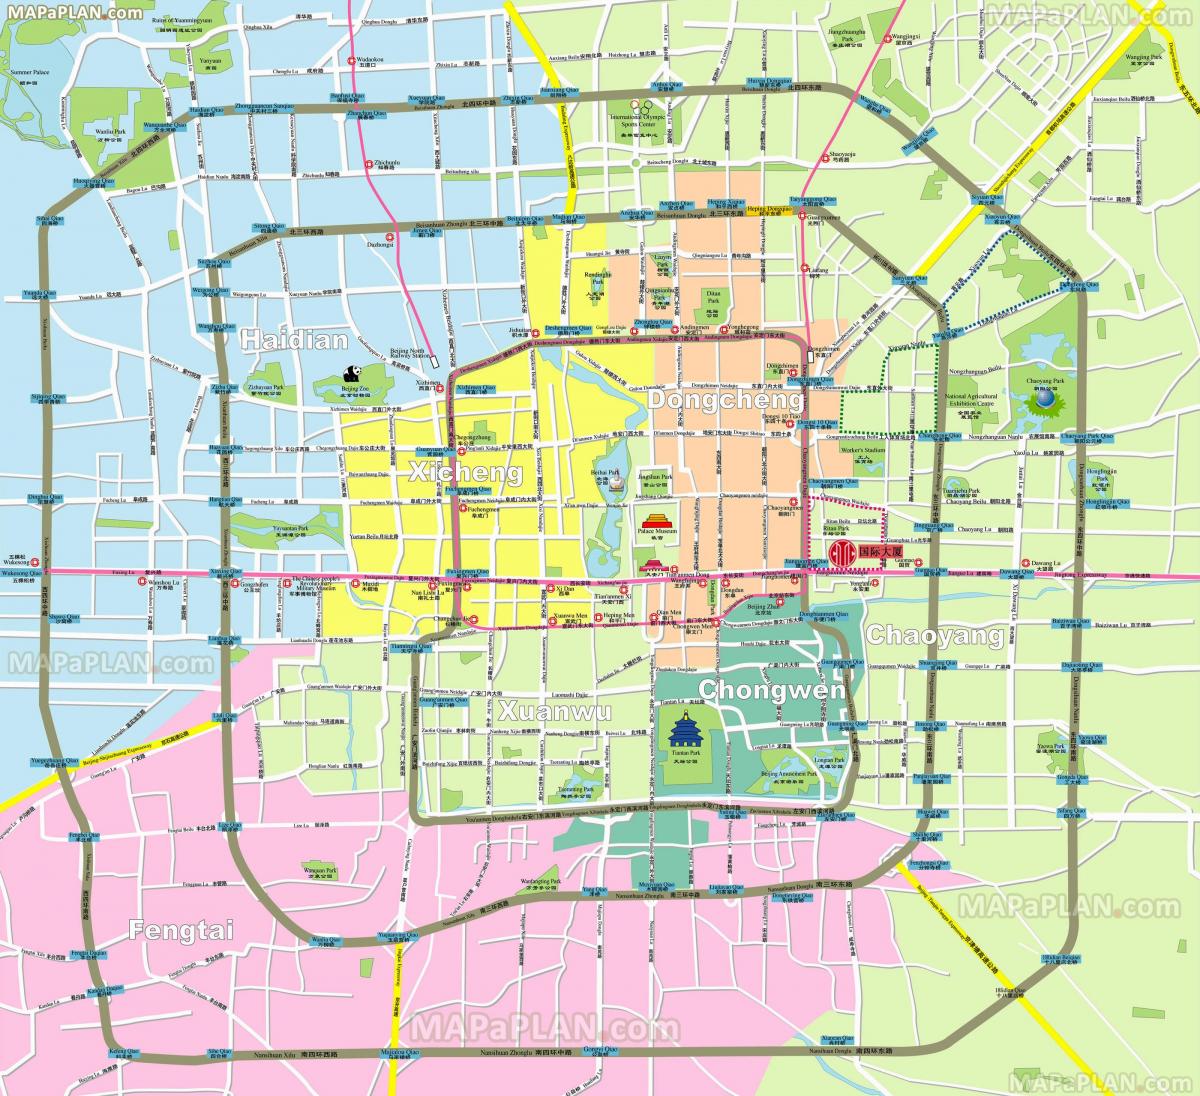 Mapa de los barrios de Pekín